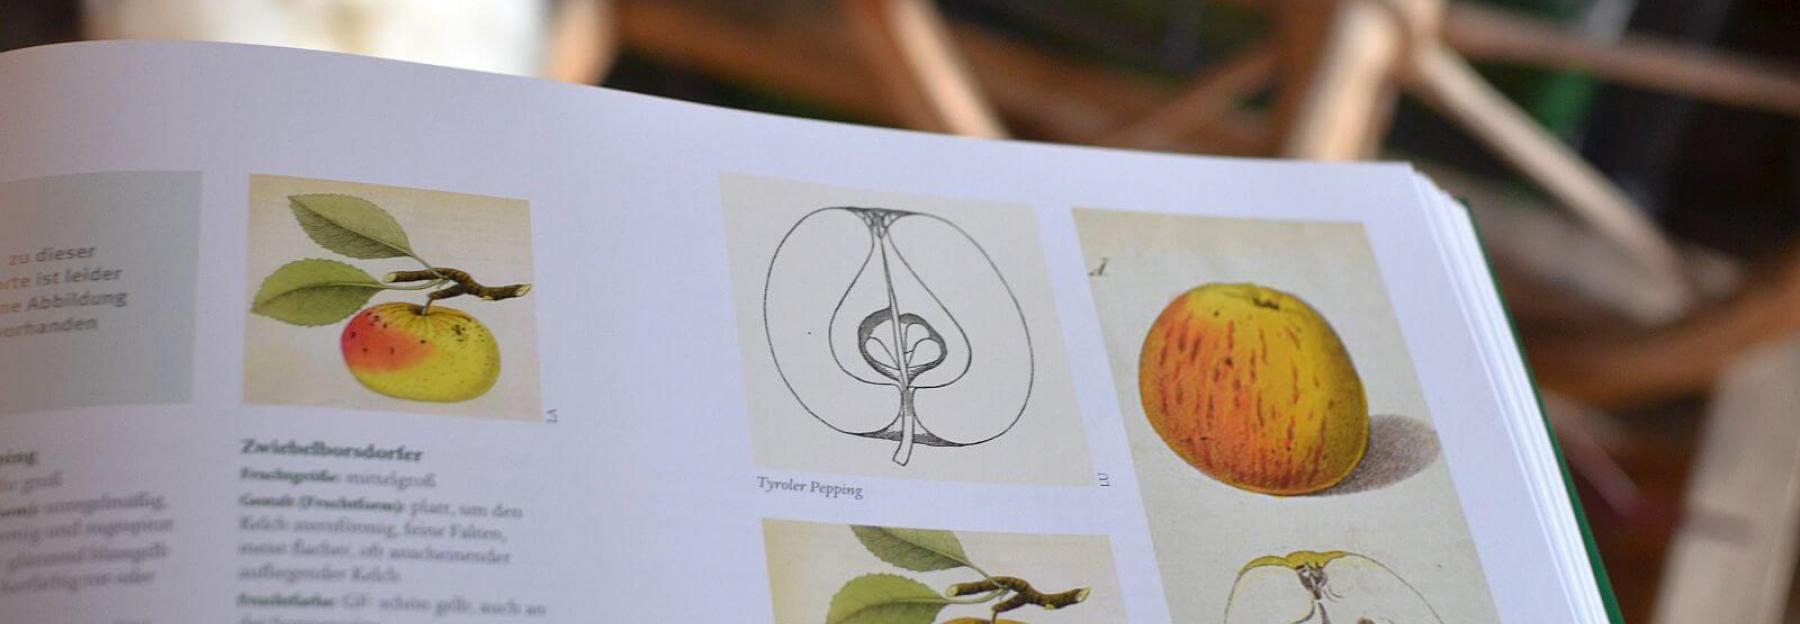 Anleitung zum Veredeln von Apfelbäumen (c) Stella Haller